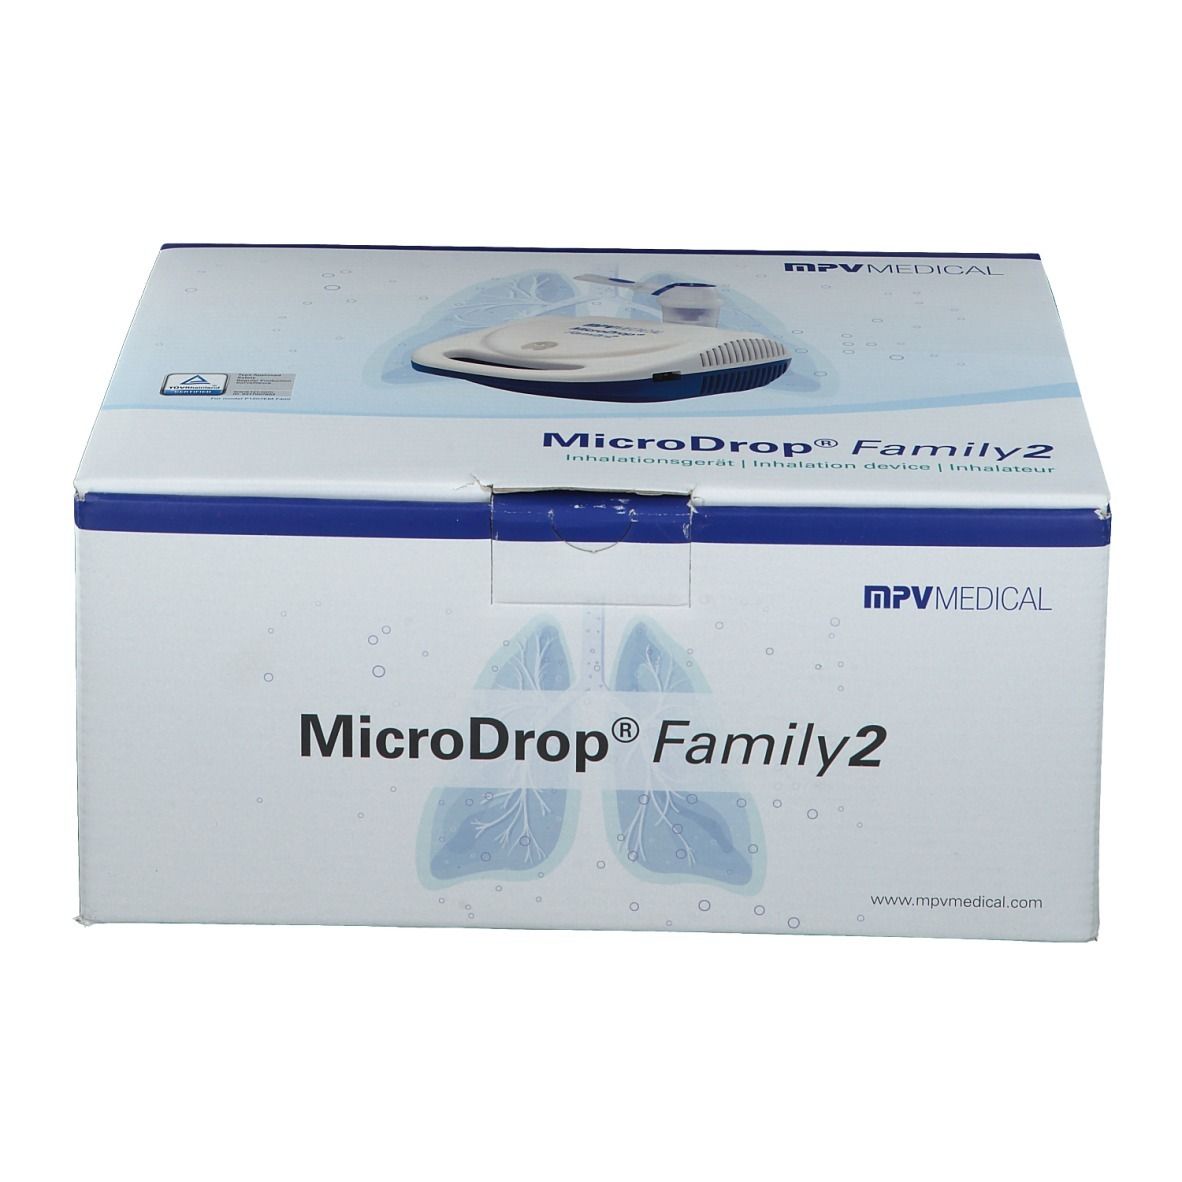 MicroDrop Family 2